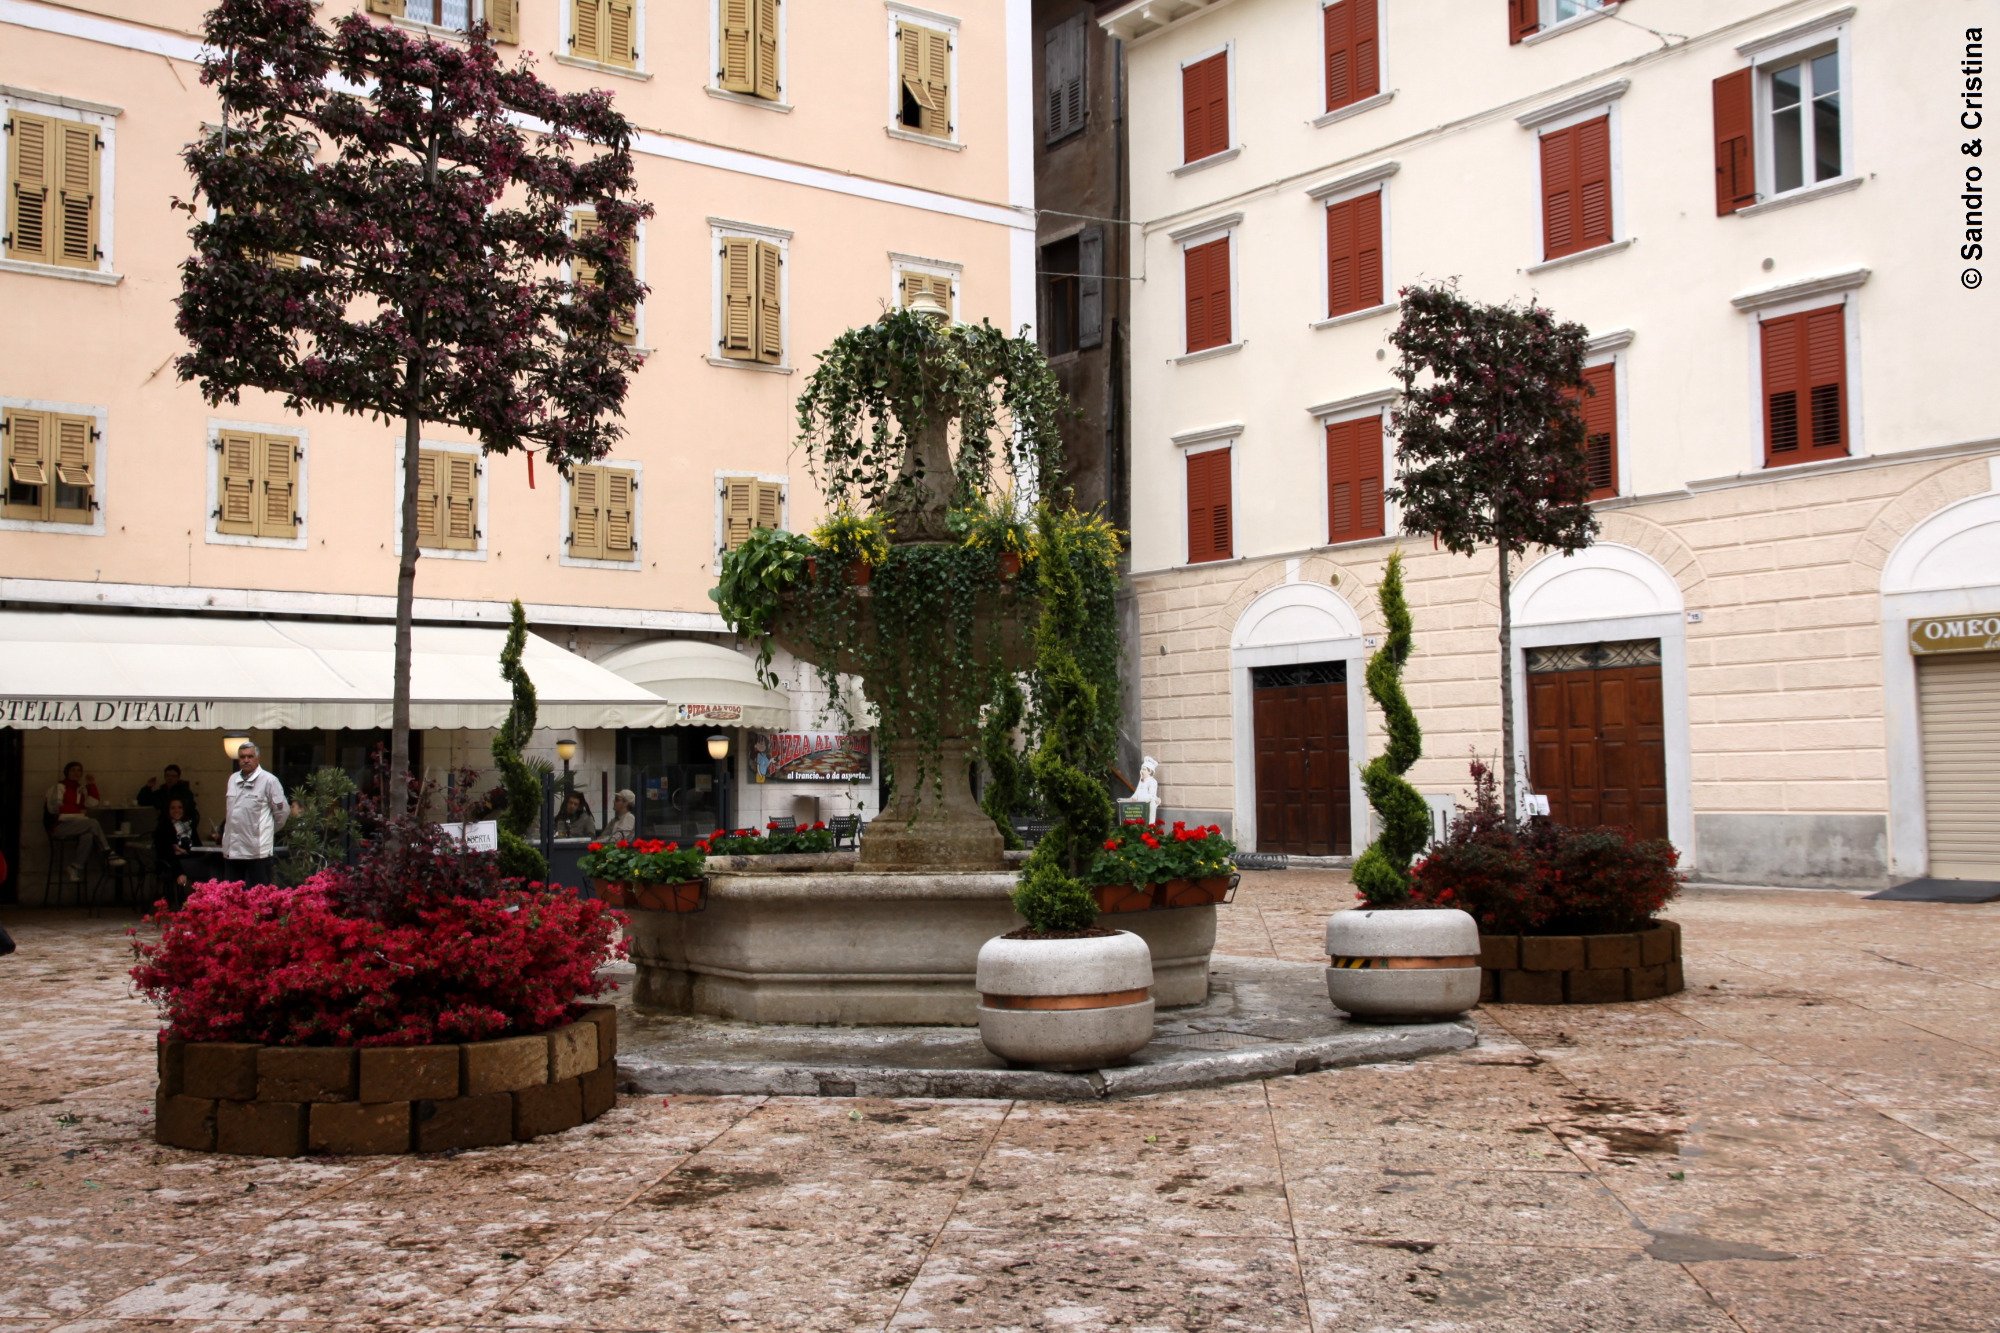 Piazza Erbe di Rovereto